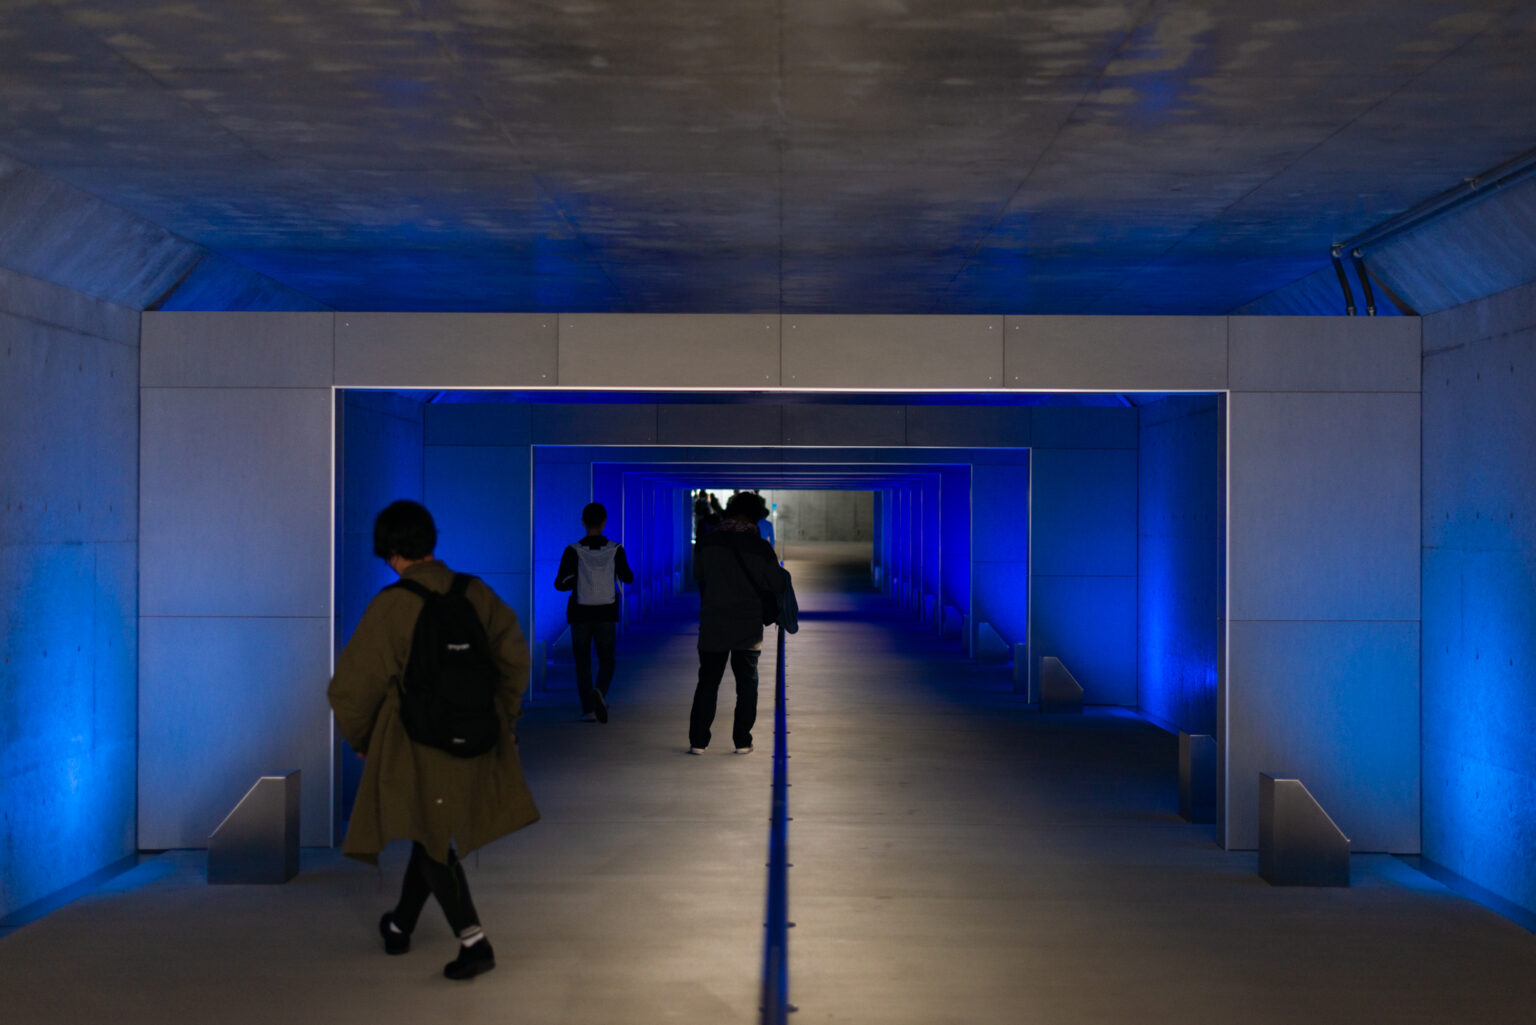 散歩道の途中には、青い光に包まれた「青のトンネル」というユニークな施設も。水の世界へ旅しているような気持ちに浸れました。